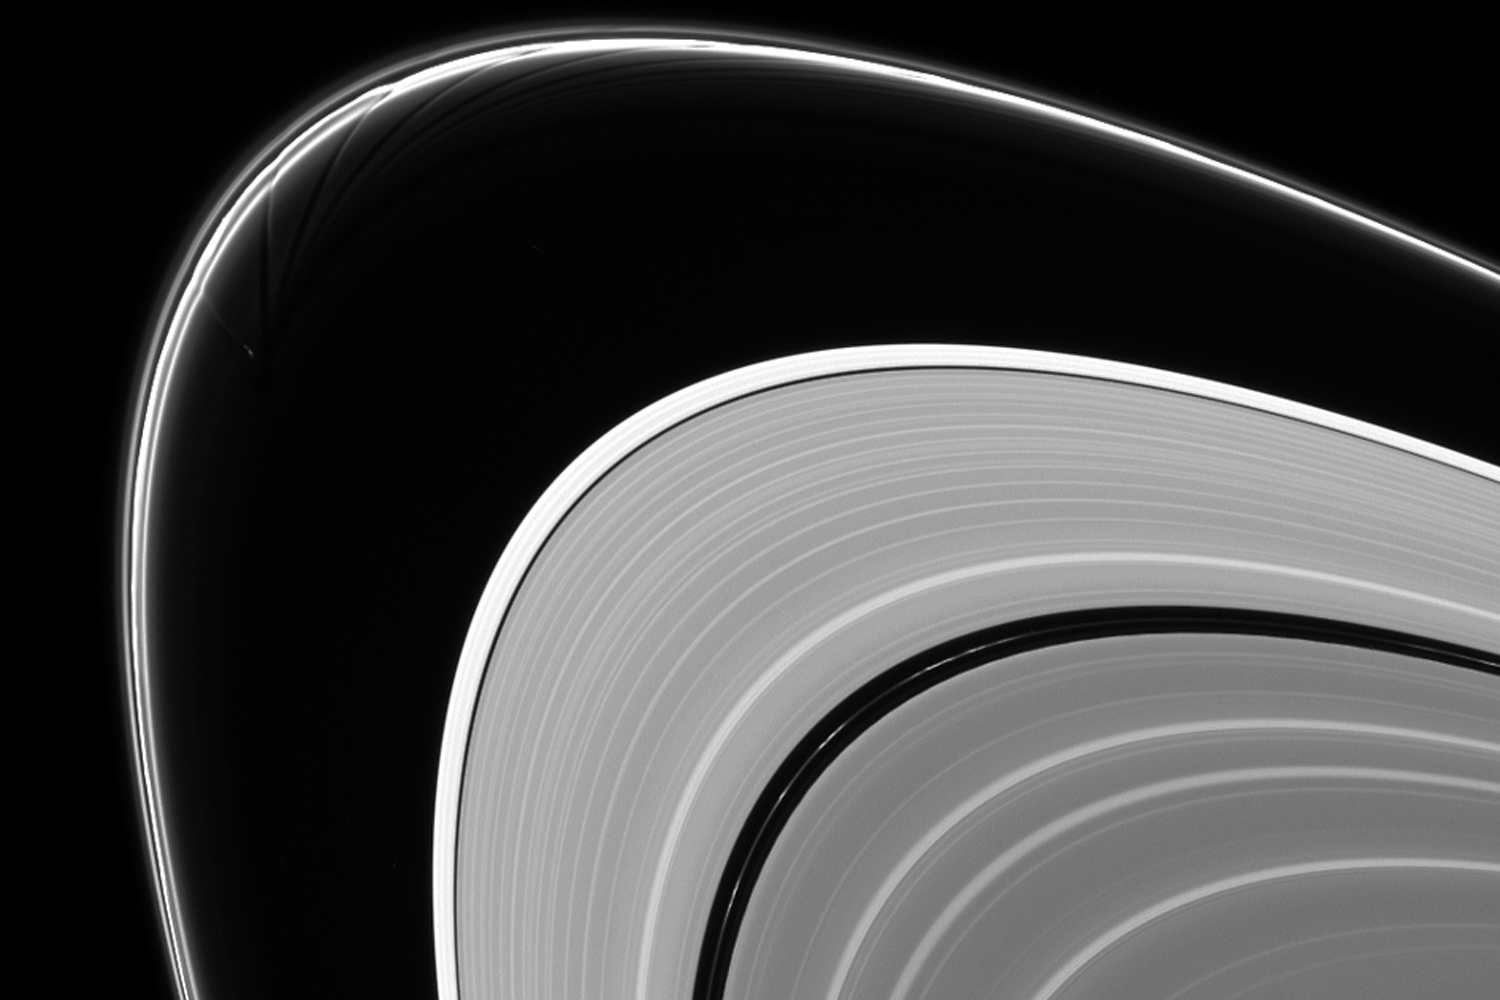 Prometeo y Pandora son los responsables de gran parte de la estructura del anillo F de Saturno